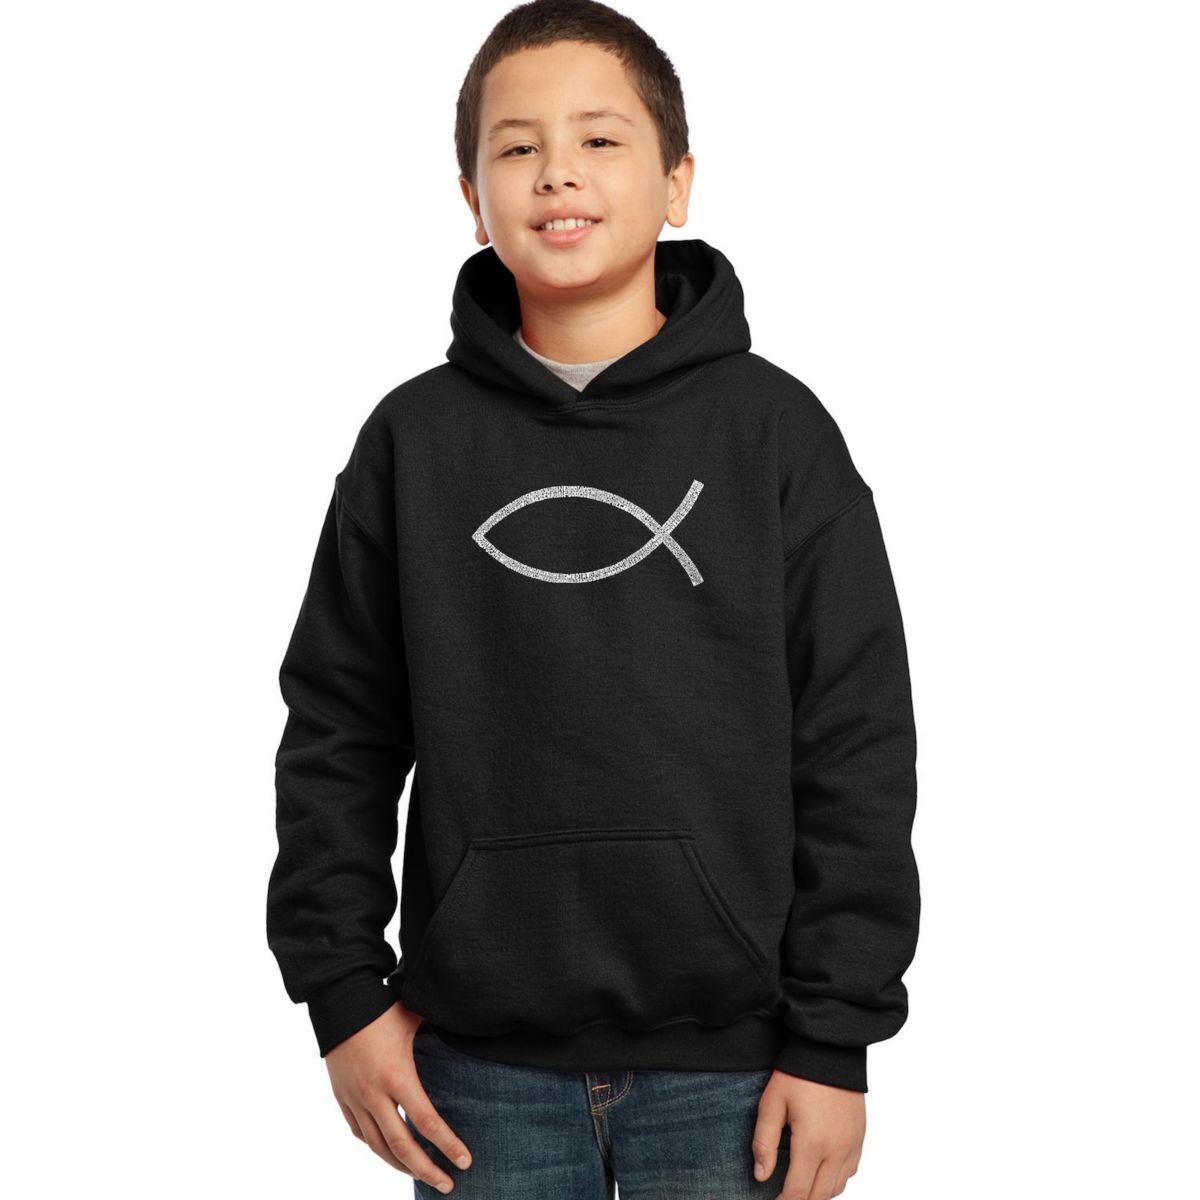 Jesus Fish - Boy's Word Art Hooded Sweatshirt LA Pop Art